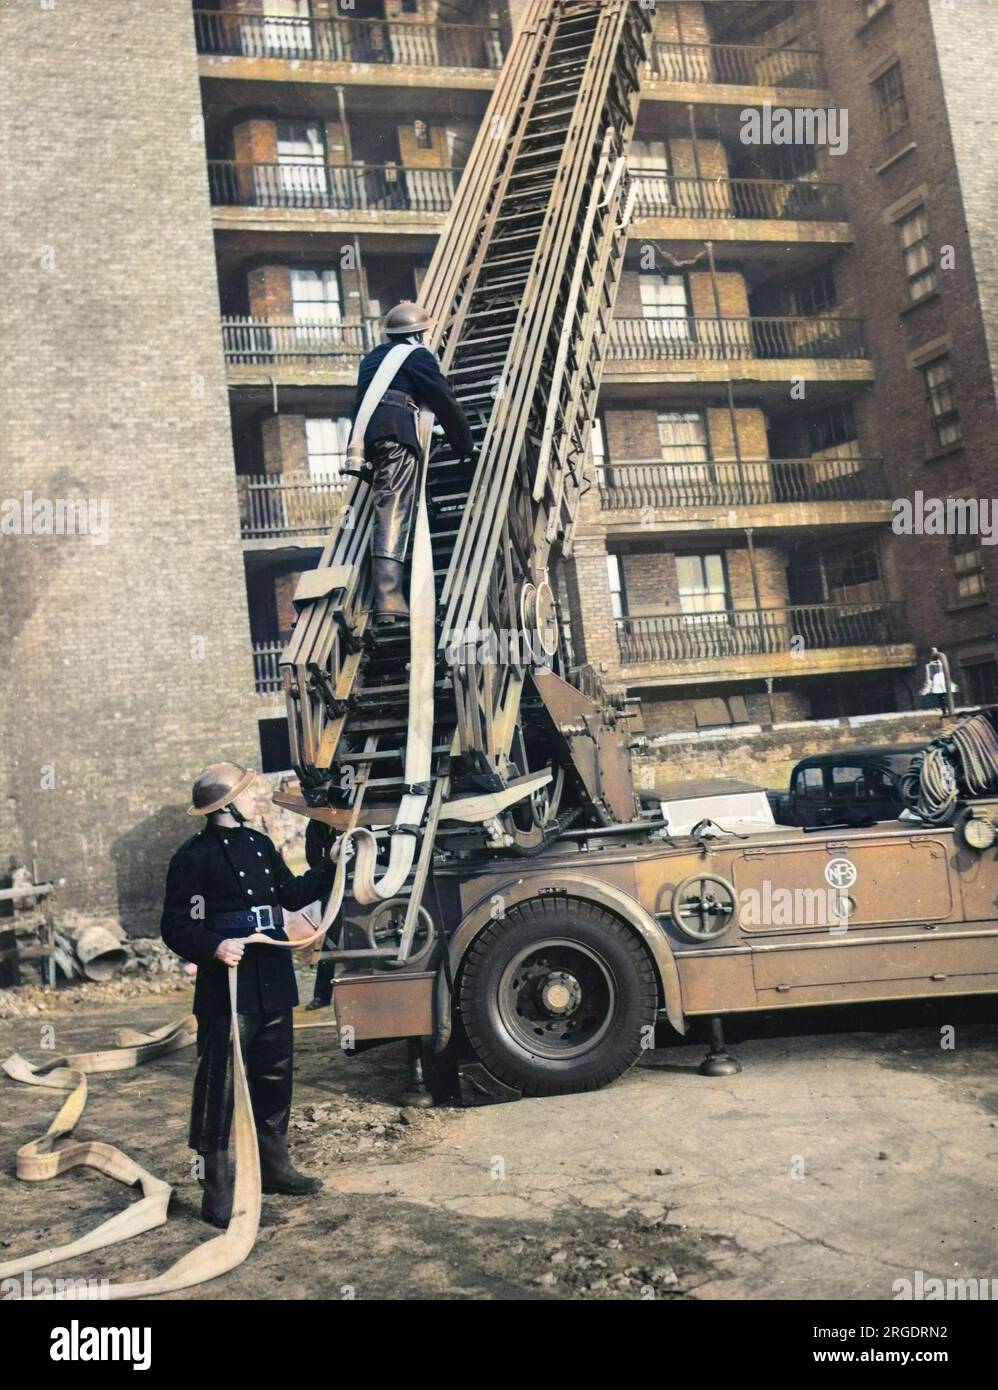 Amerikanische Soldaten im Dienst der Londoner Feuerwehr üben britische Feuerbekämpfungstechniken wie das Klettern auf eine Drehtischleiter aus Stahl. Sie können diese Fähigkeiten dann nutzen, wenn sie in das zivile Leben in den Vereinigten Staaten zurückkehren. Stockfoto